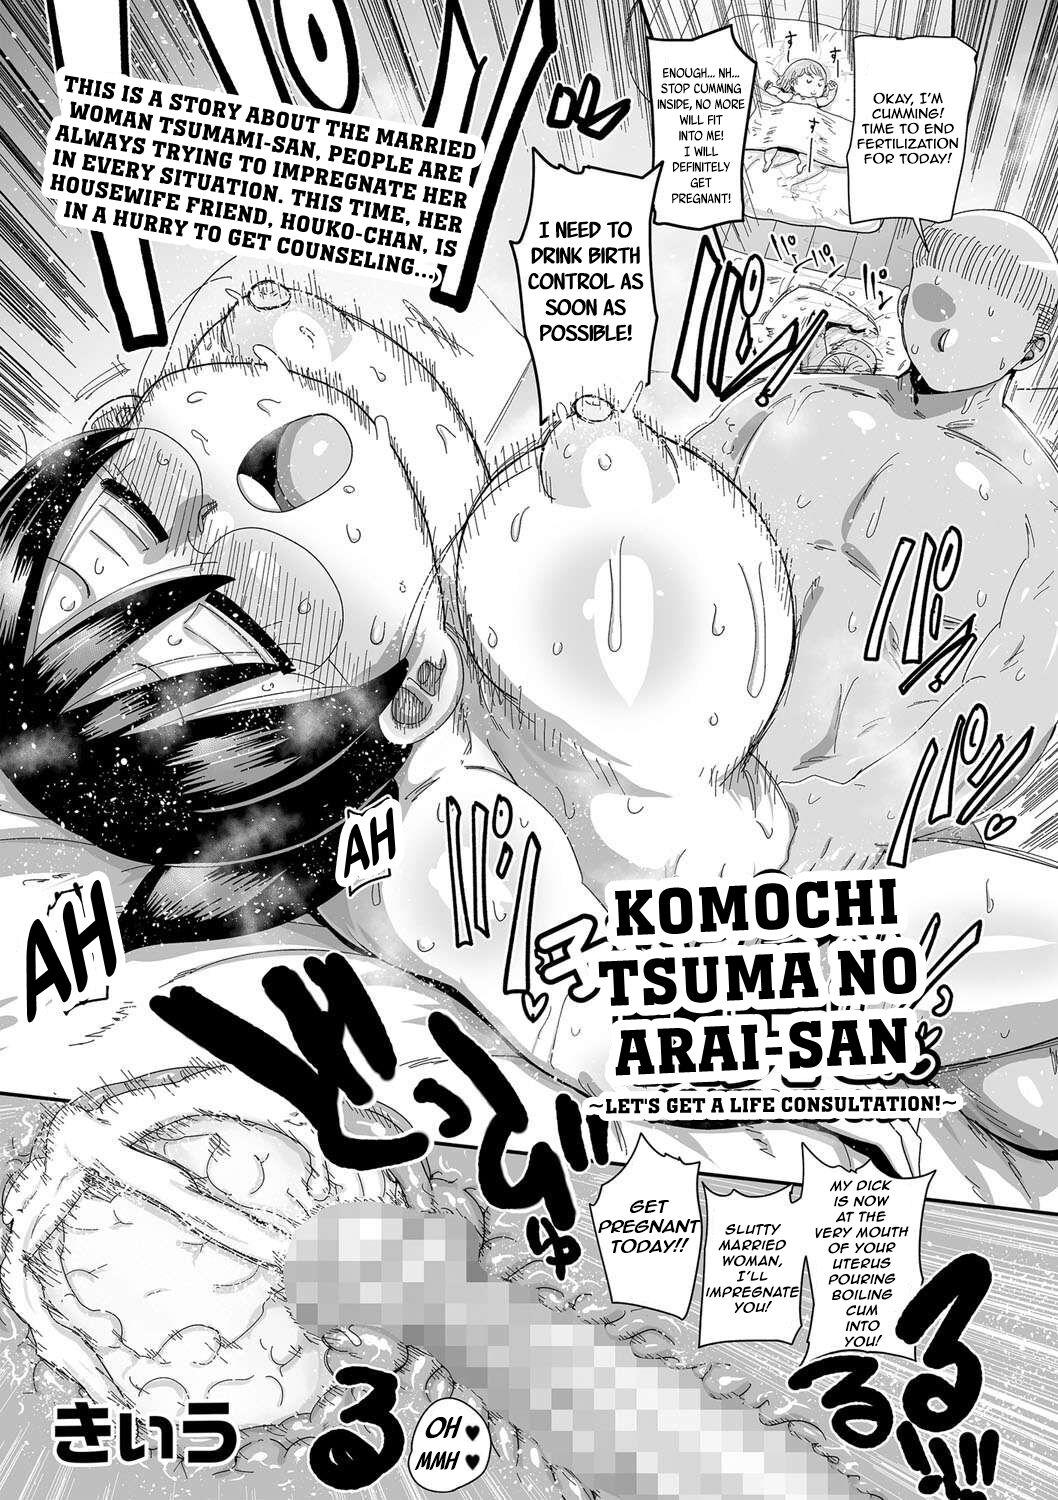 Freeporn Komochi Tsuma no Arai-san: Let's Get a Life Consultation! - Original Monstercock - Page 1